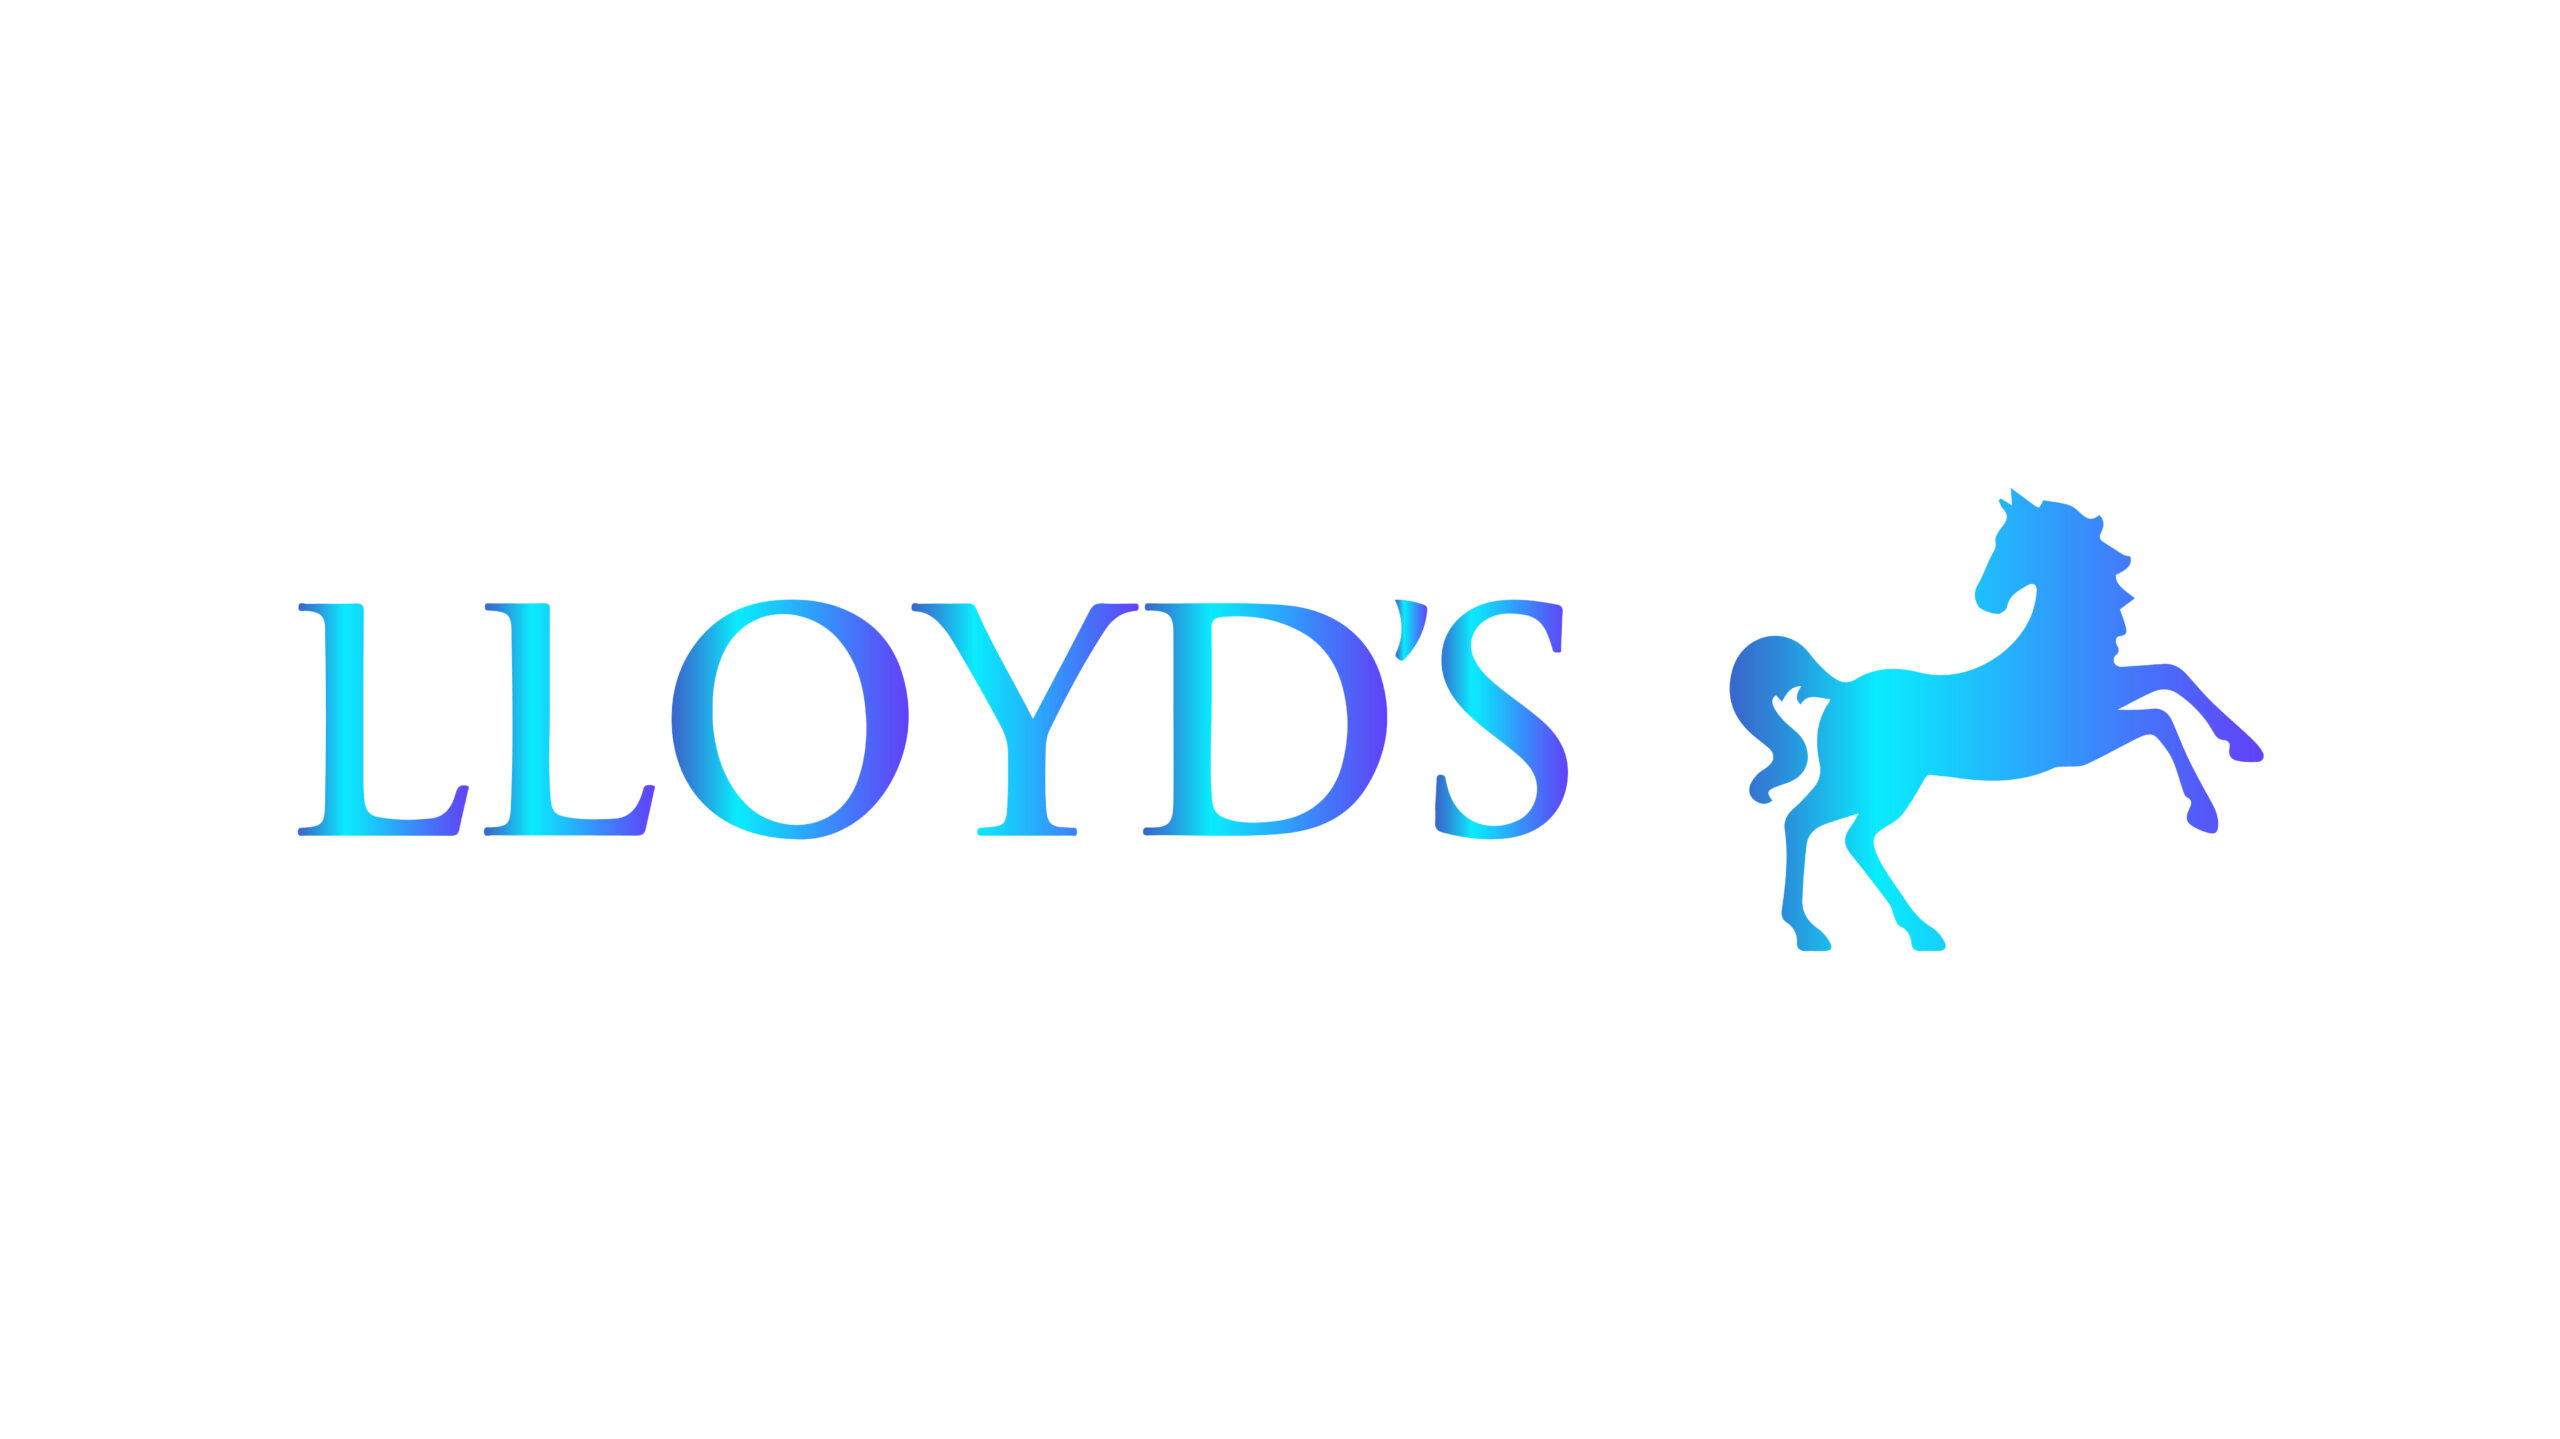 Lloyd's запускает платформу устойчивости для системных рисков